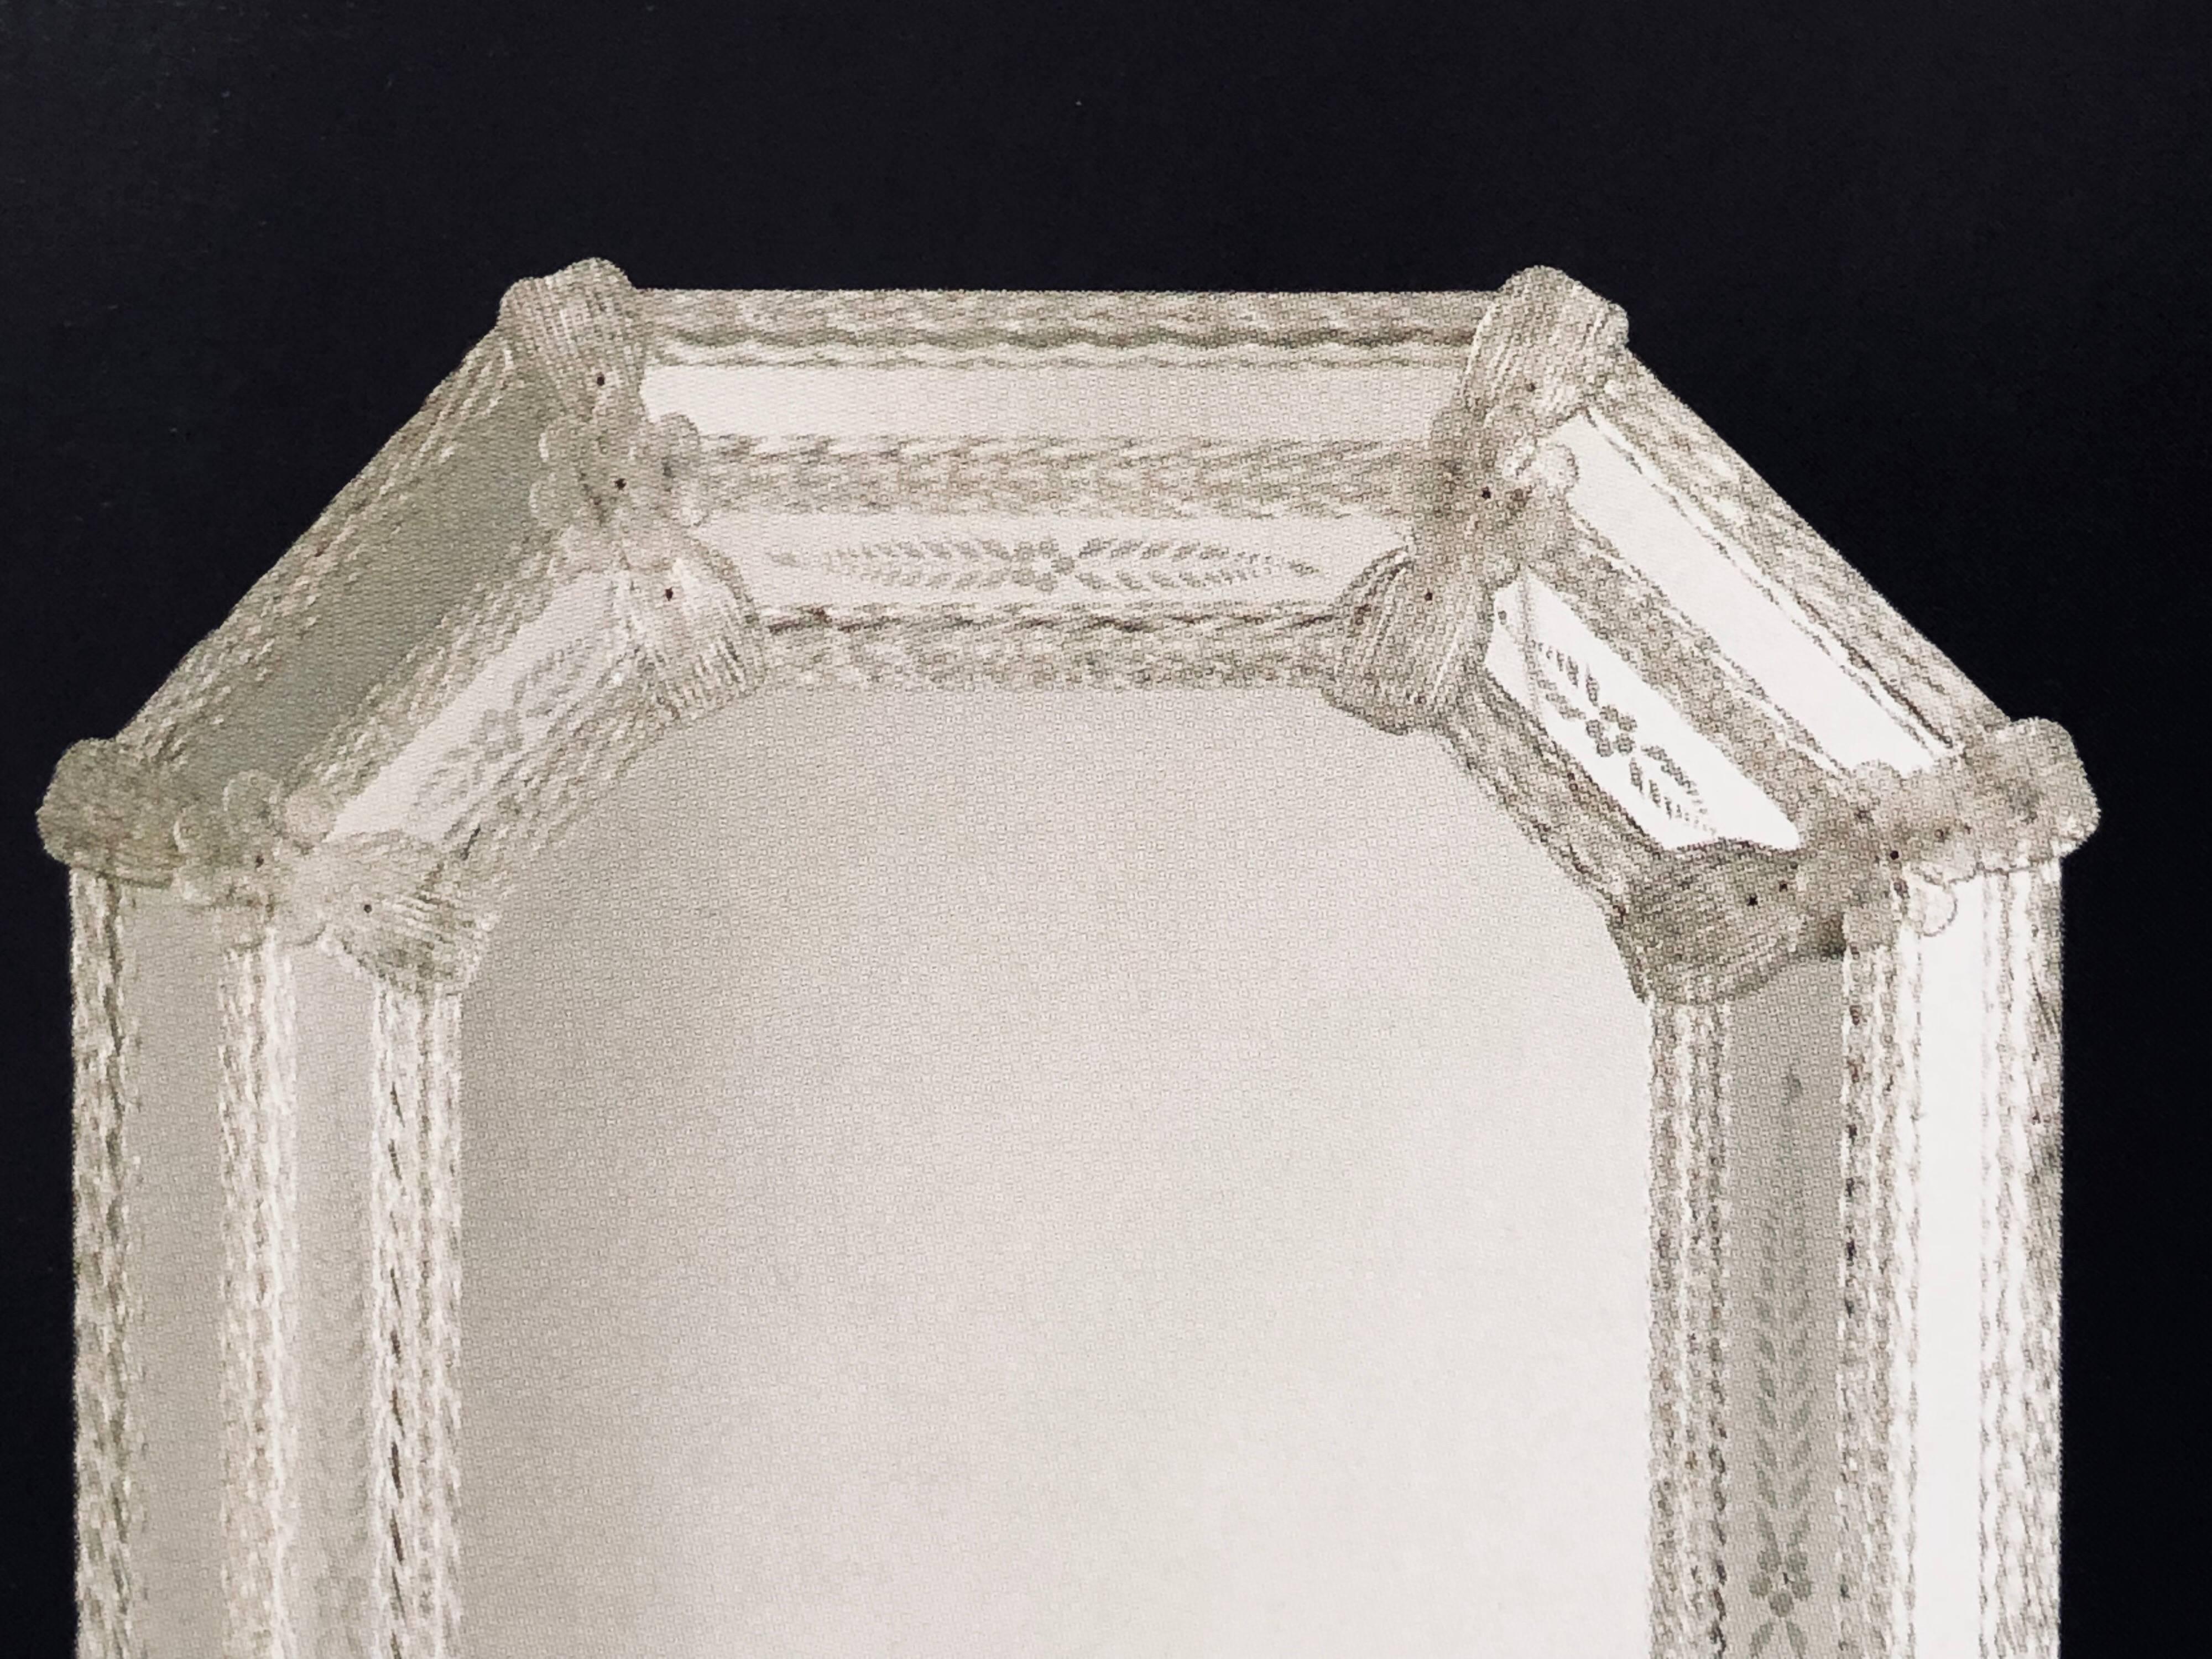 Deux miroirs octogonaux italiens en verre vénitien / Murano gravé dans l'esprit néoclassique moderne. Les miroirs sont en verre gravé à la main et ornés de rubans et de rosettes en verre transparent. Des miroirs personnalisés sont disponibles. Les